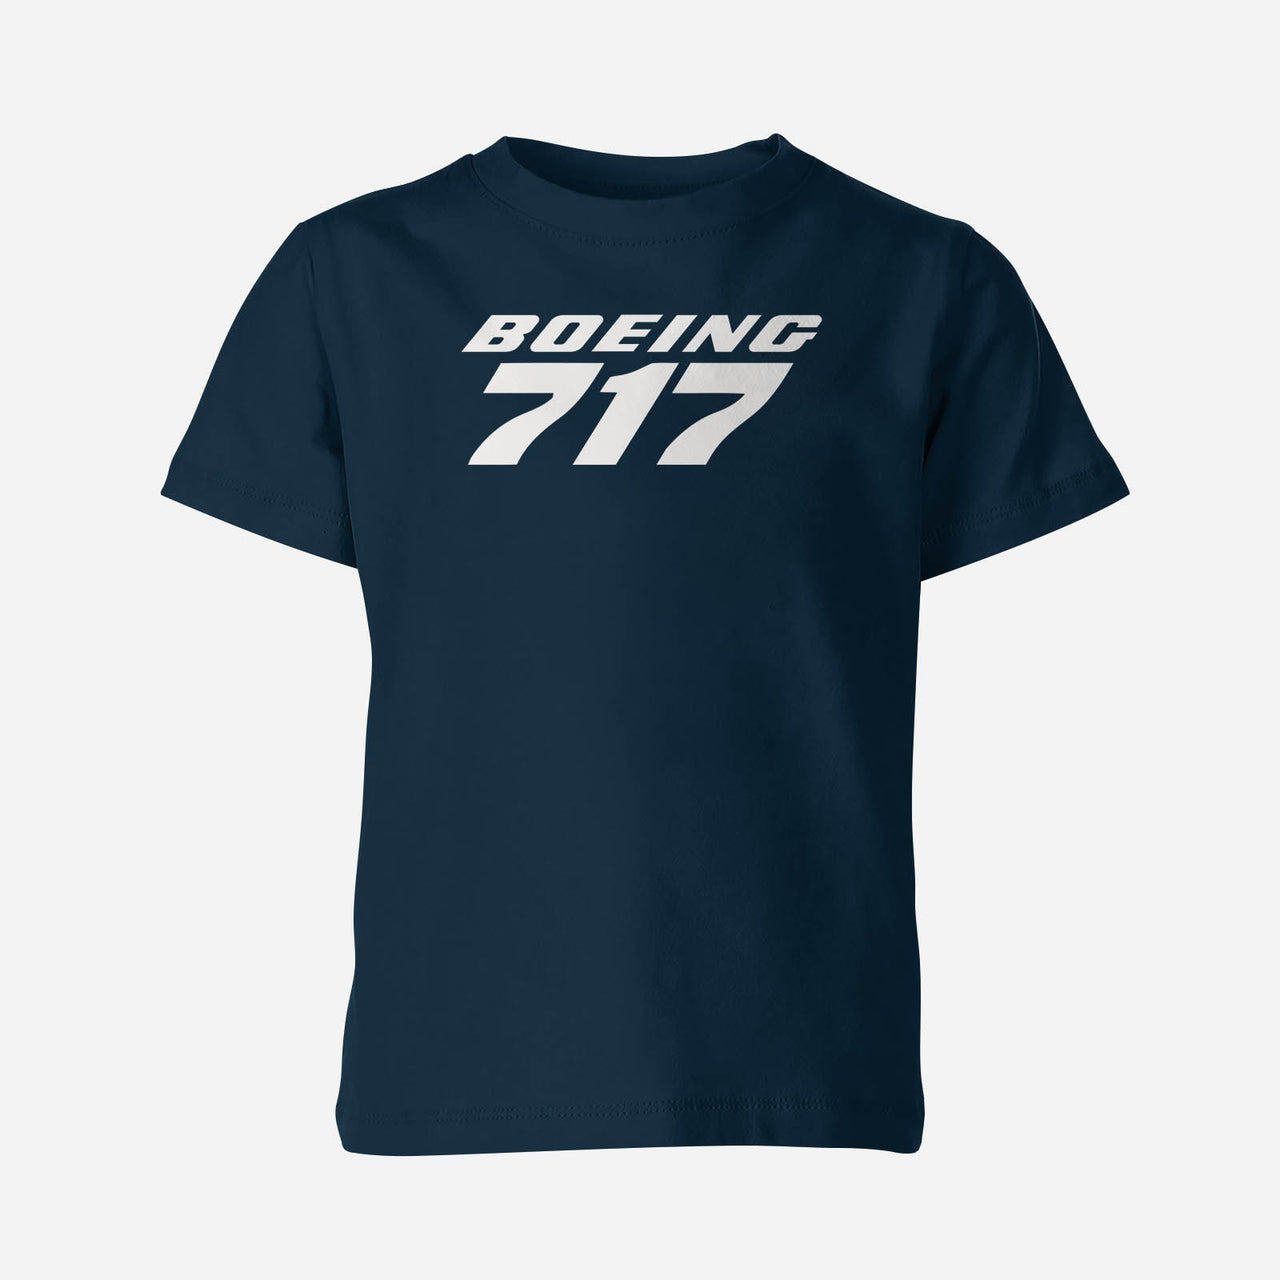 Boeing 717 & Text Designed Children T-Shirts